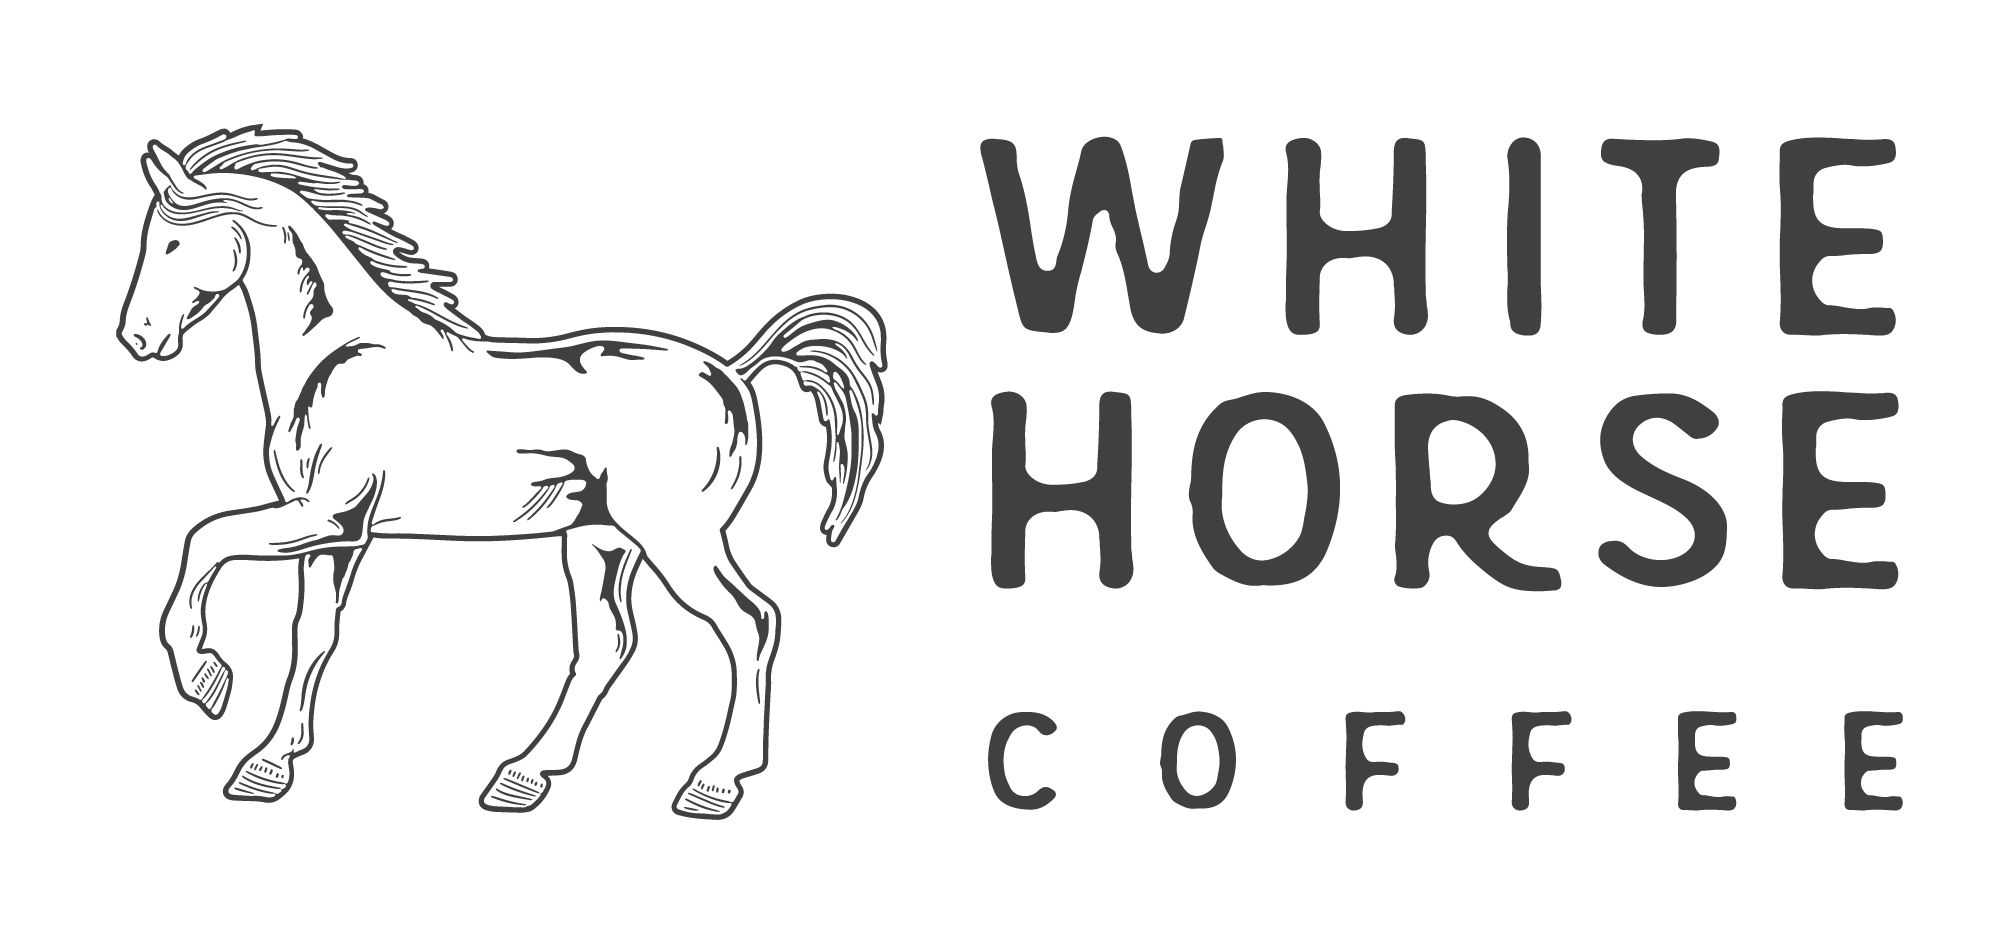 whc_white_14 Horizontal Logo V2